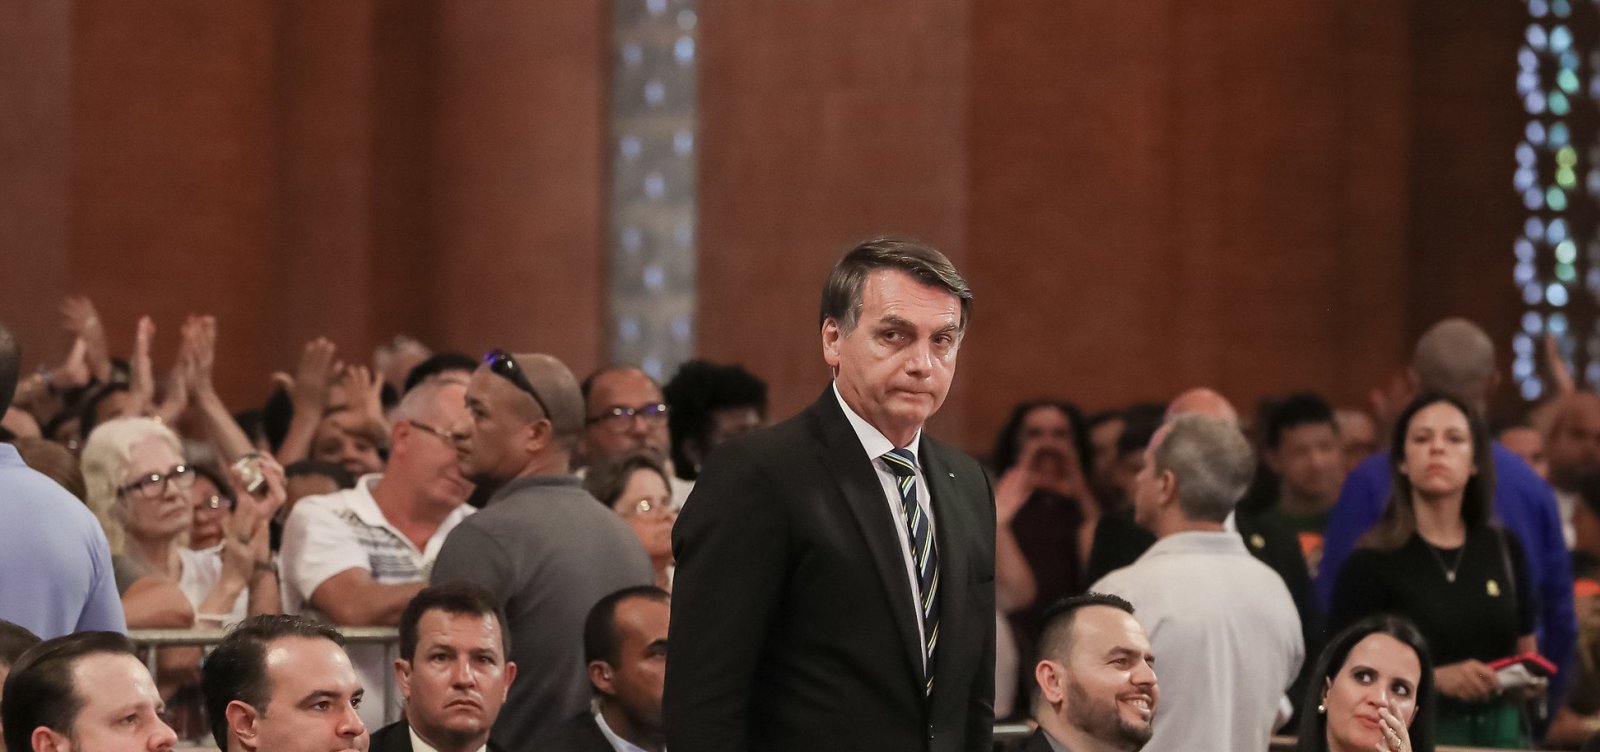 Na Basílica de Aparecida, Bolsonaro é recebido com aplausos e vaias, e padre pede silêncio